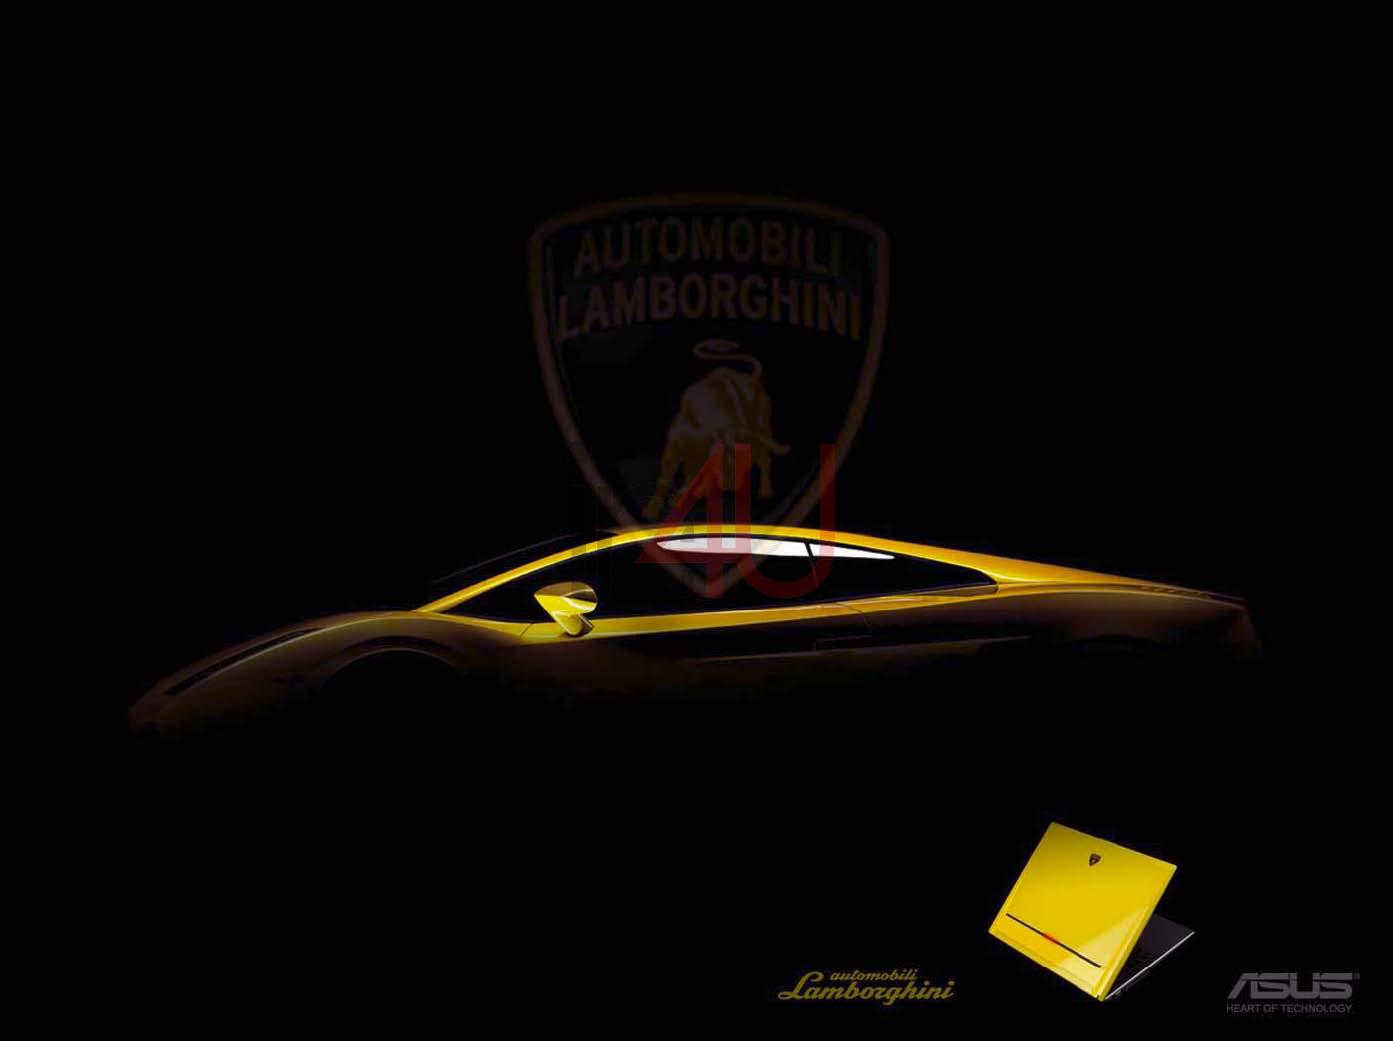 Asus Lamborghini Series HD wallpapers Hd Wallpaper